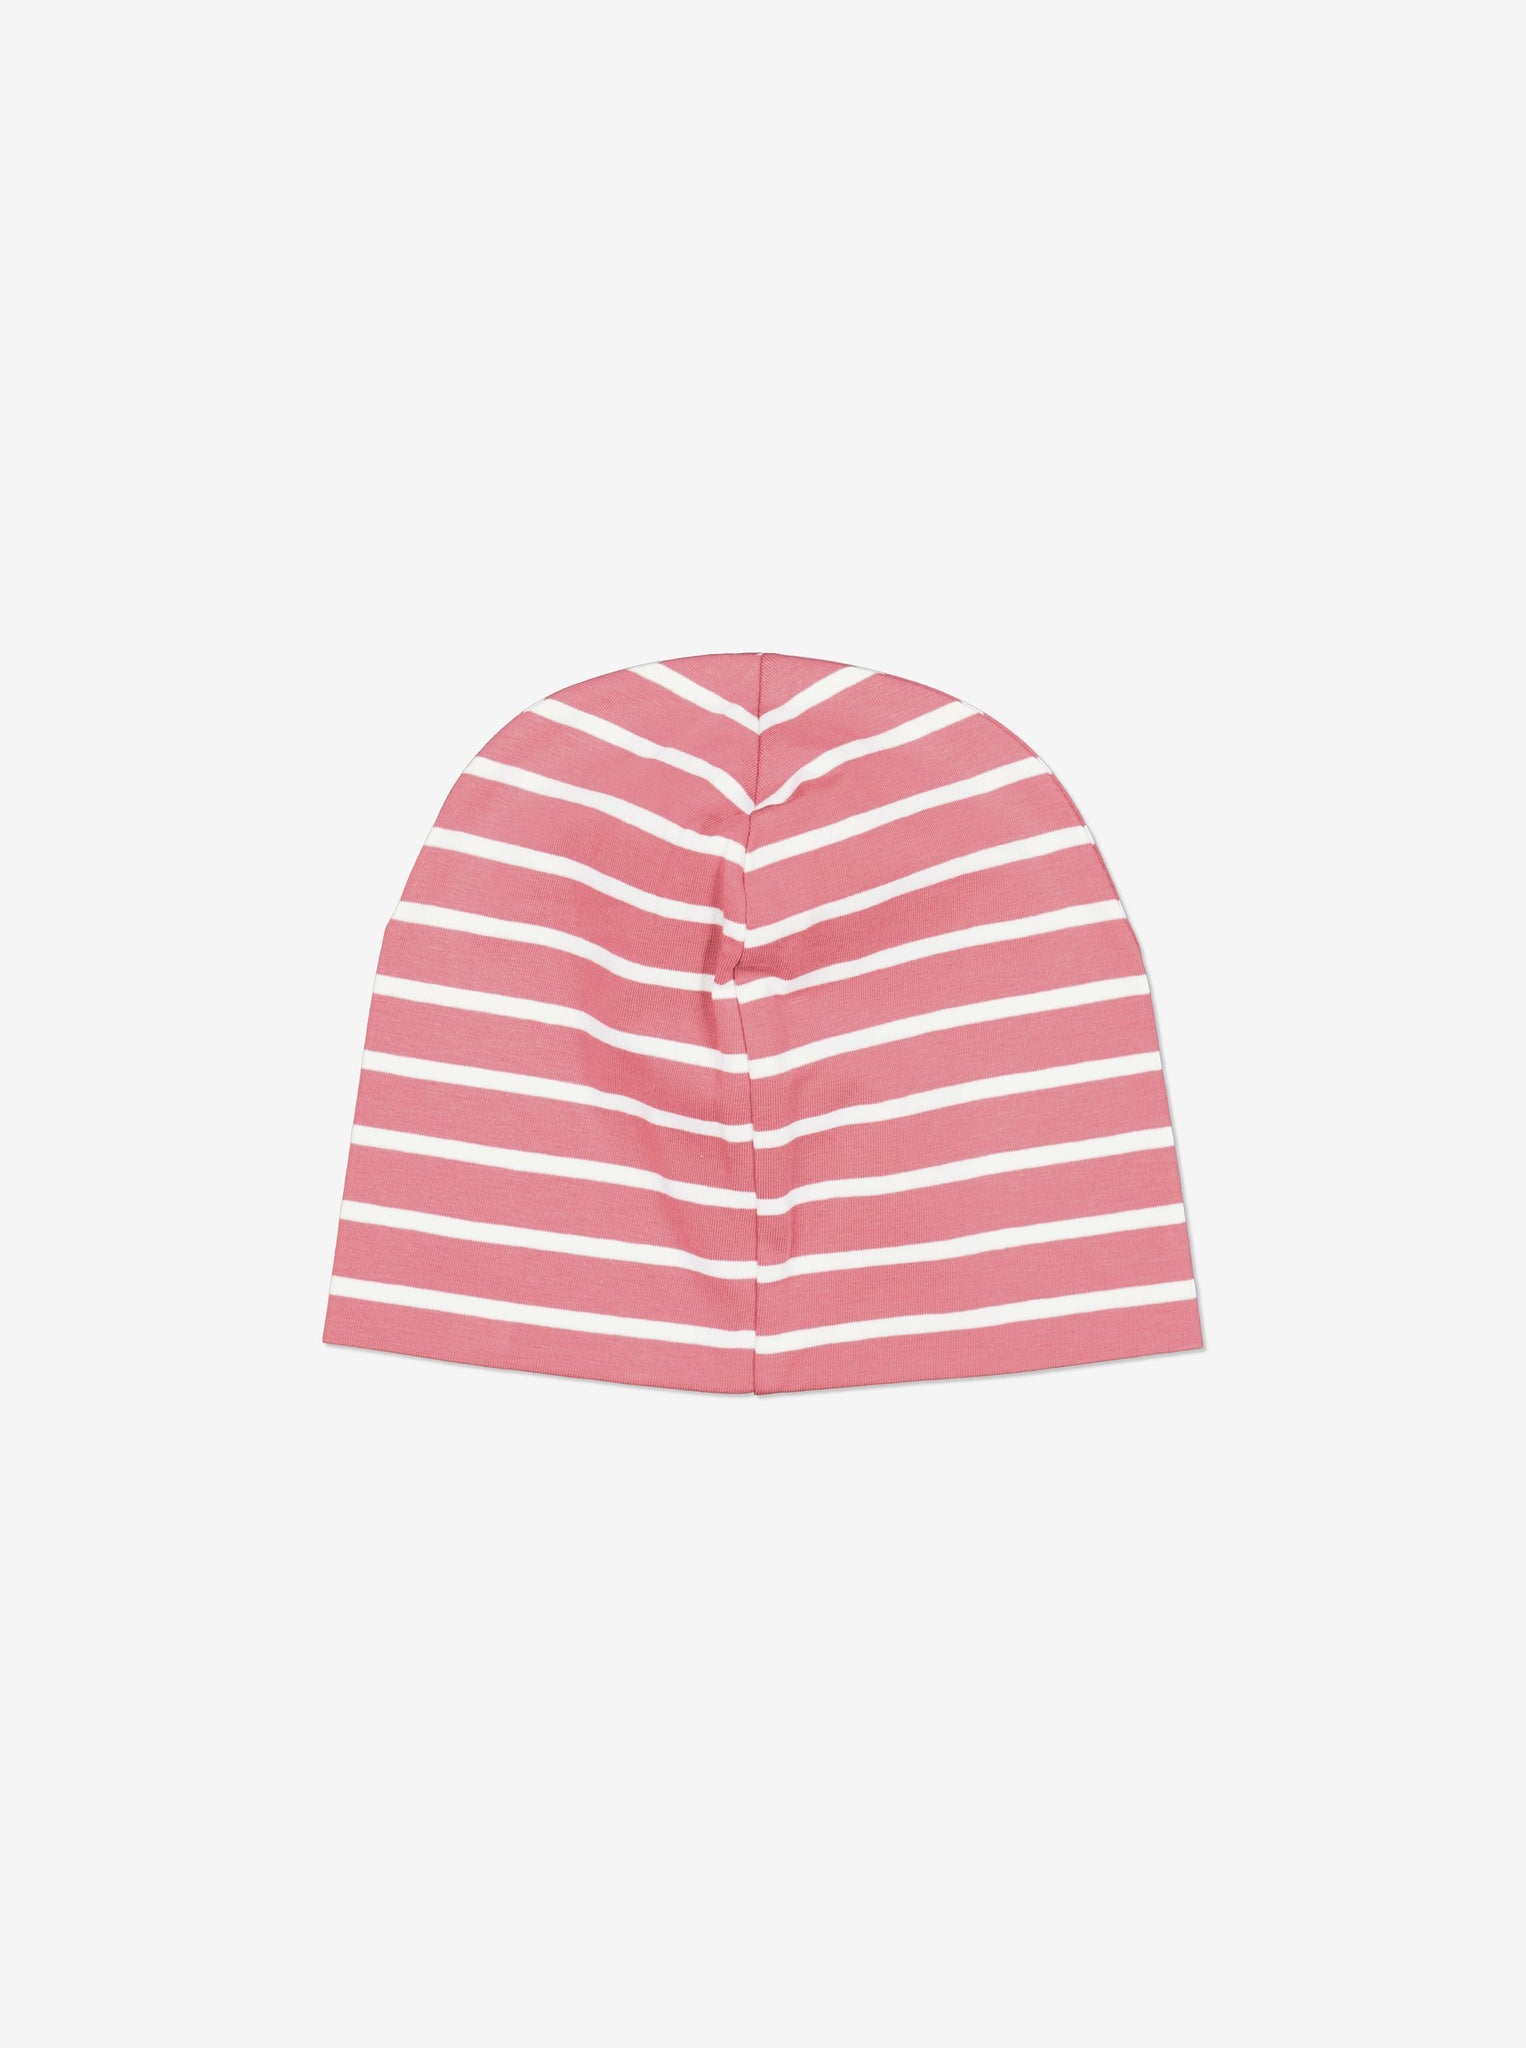 Striped Pink Kids Beanie Hat from Polarn O. Pyret Kidswear. Warm kids beanie